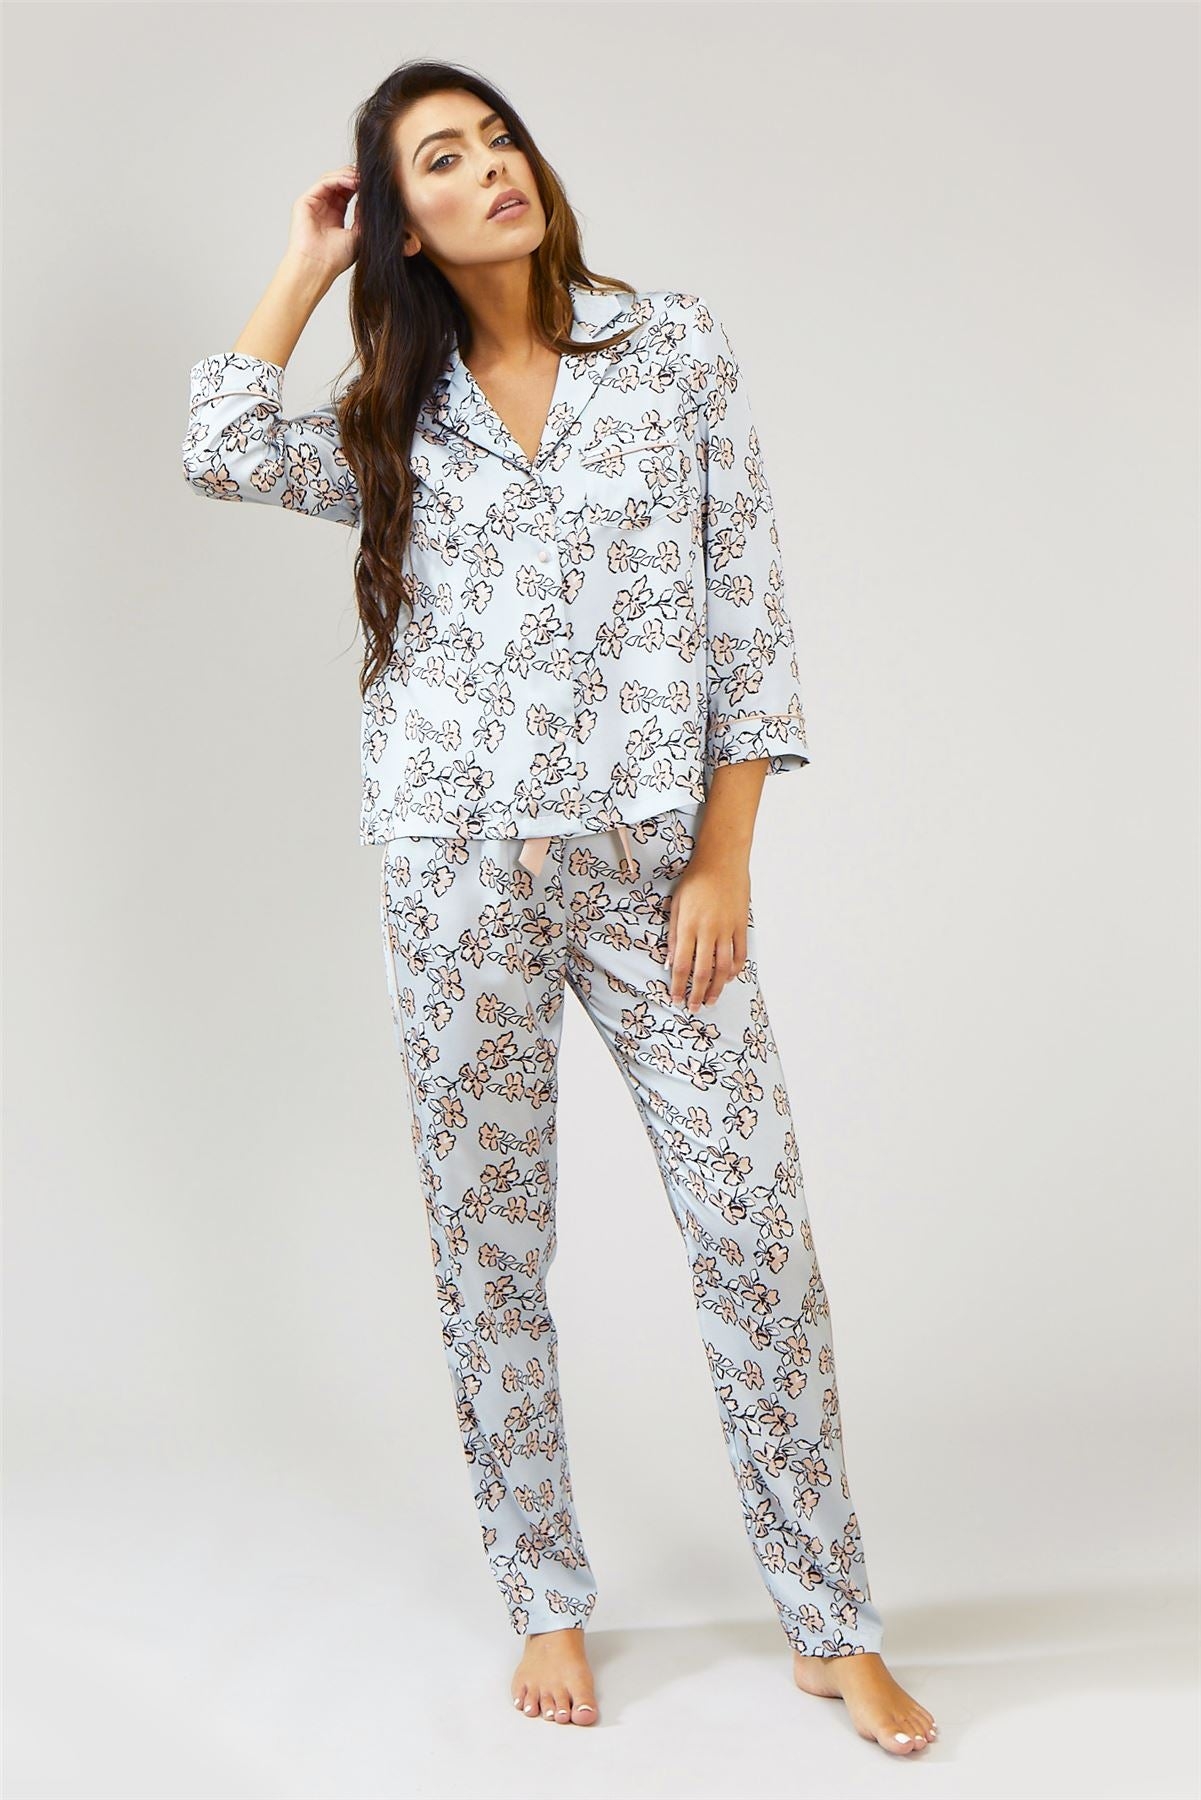 Floral Pyjama Trousers | Women’s Nightwear | Pretty You London UK 8-10 / Duck Egg